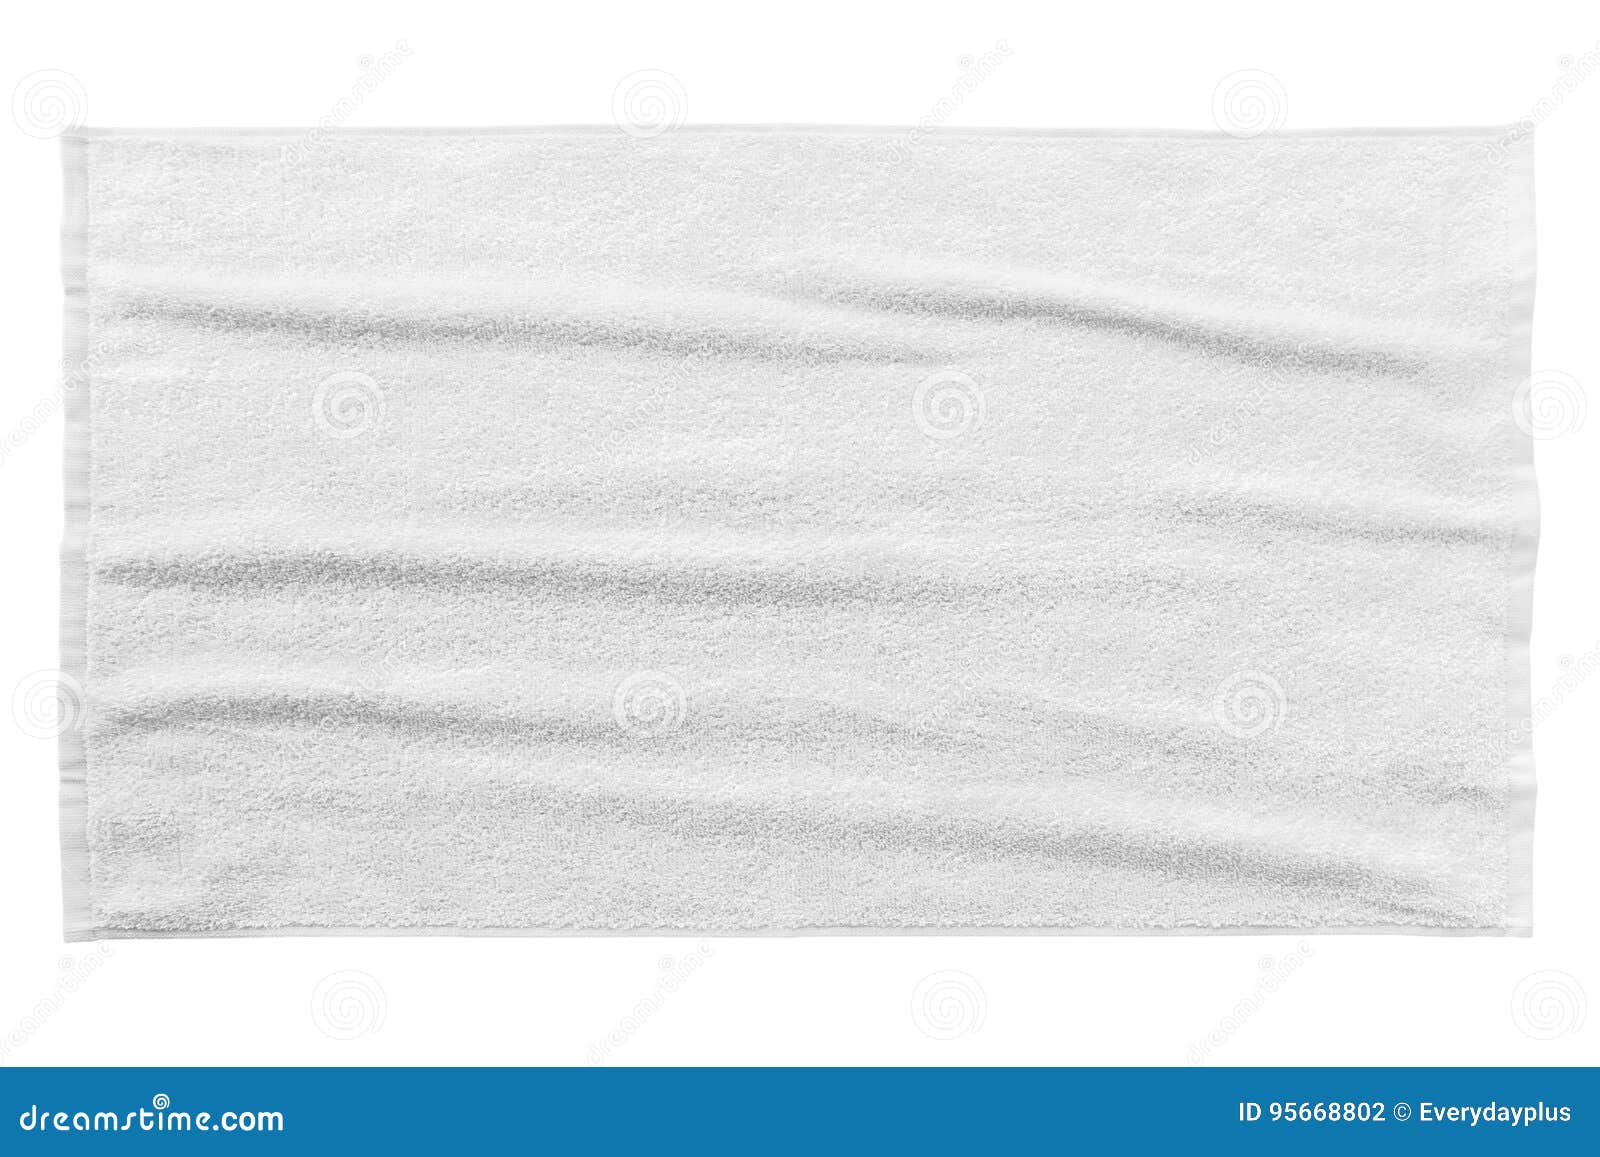 white beach towel